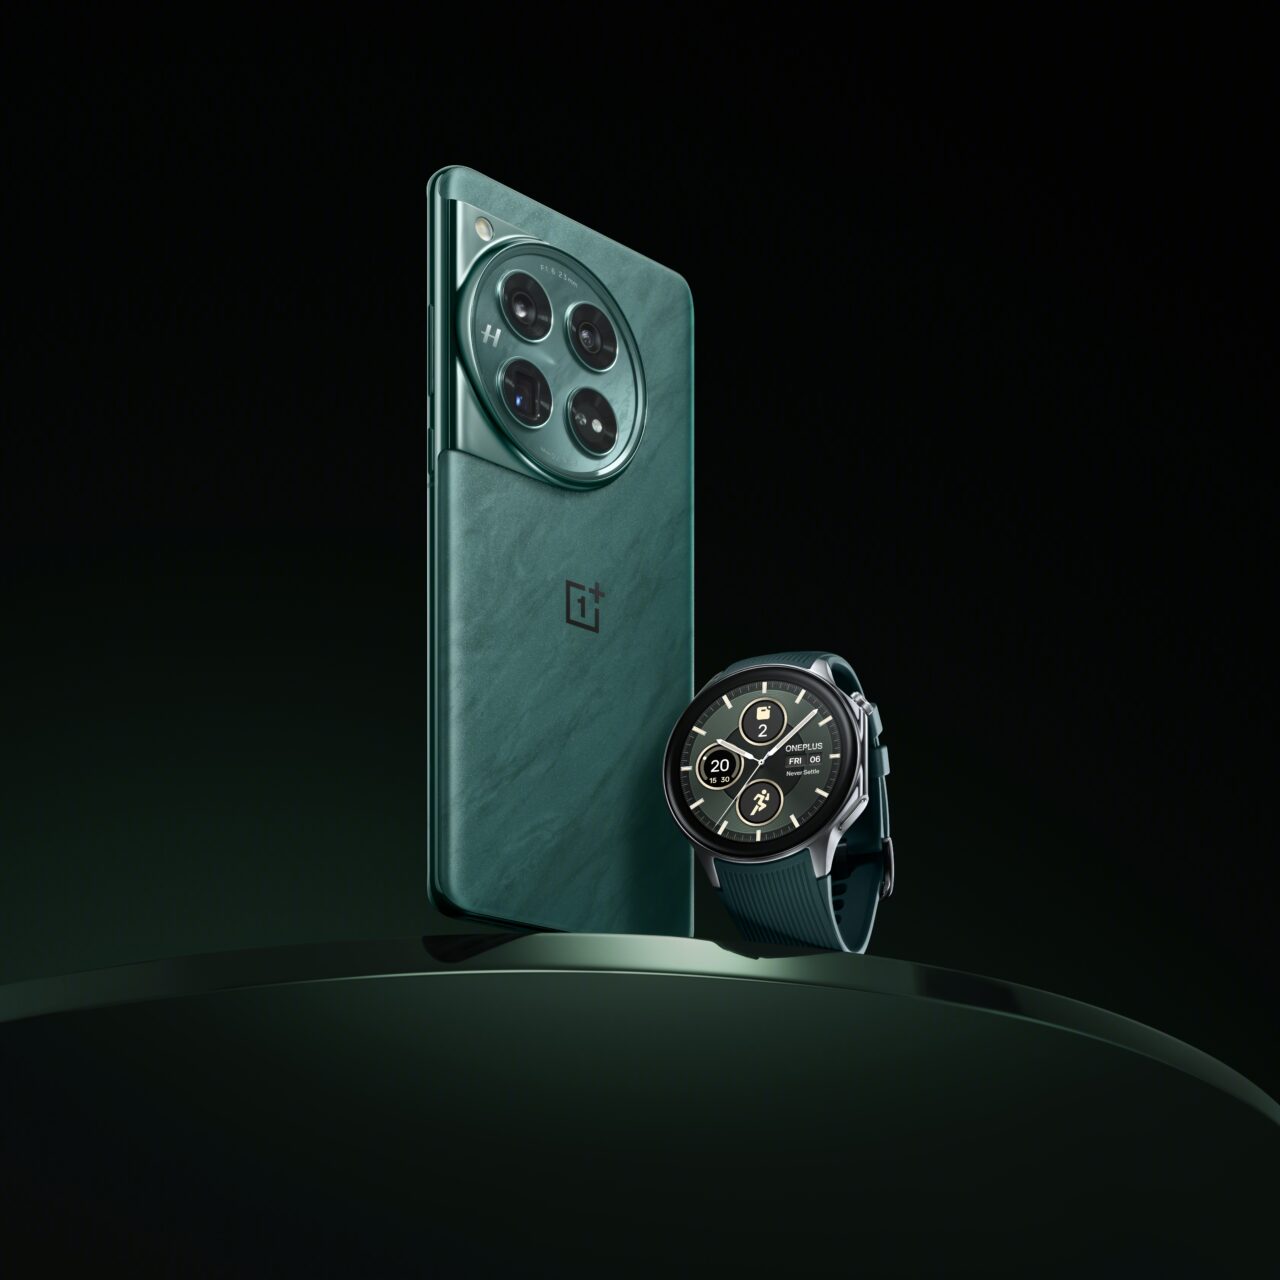 Smartfon marki OnePlus z potrójnym aparatem w zielonym etui stojący pionowo oraz czarny smartwatch z niebieskim paskiem na ciemnym tle.